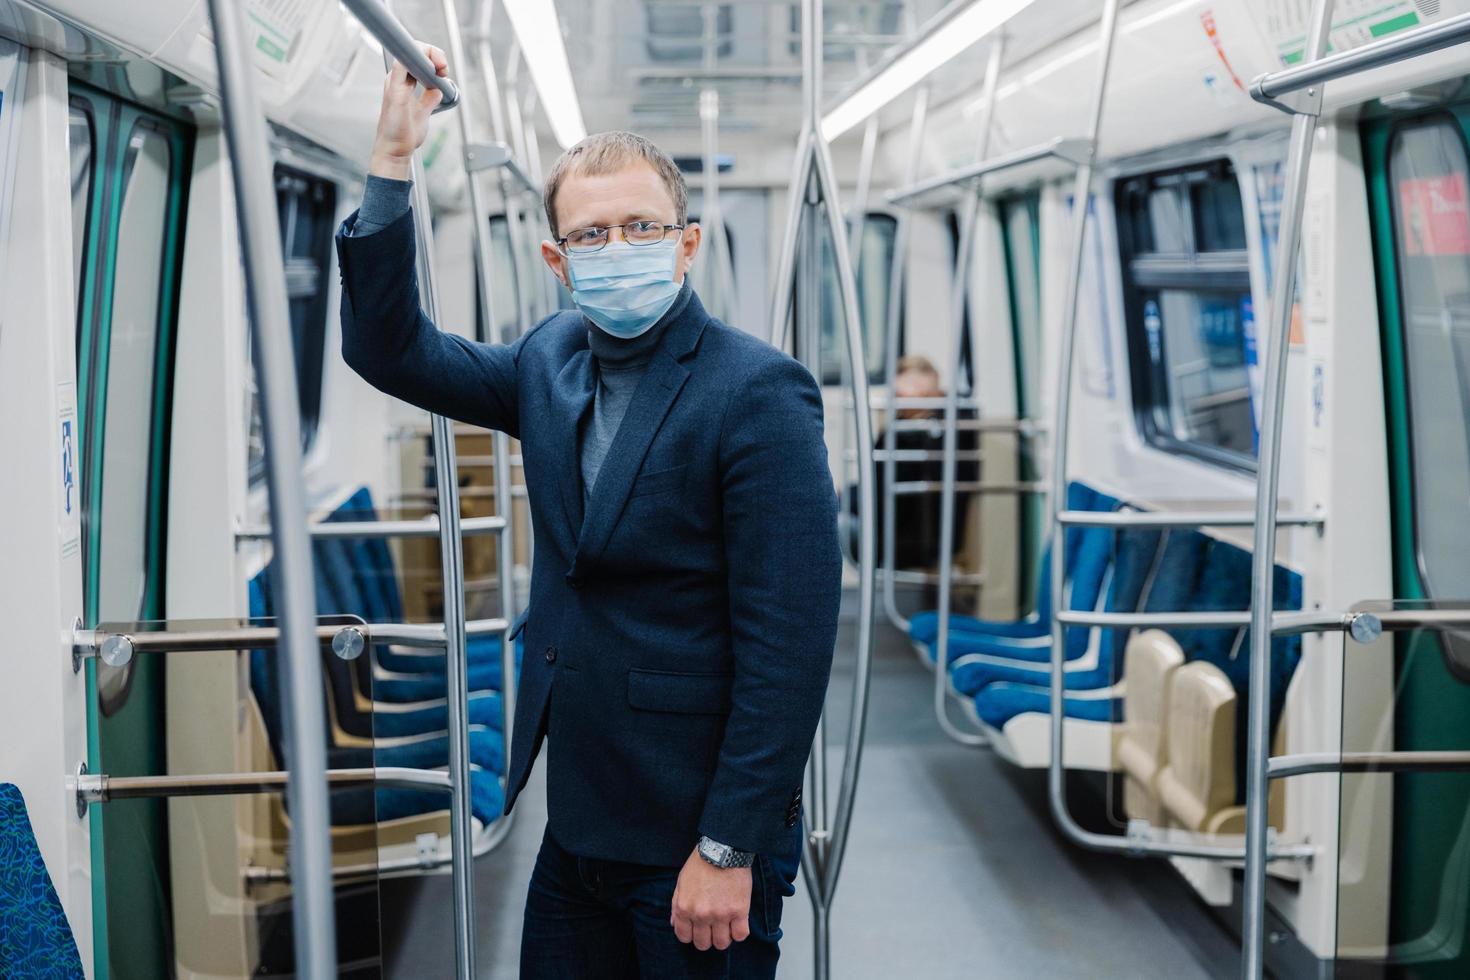 crise do coronavírus em 2020 homem viaja para trabalhar no subsolo vazio, usa transporte público, usa máscara facial protetora contra vírus, usa máscara cirúrgica protetora durante o período de quarentena foto